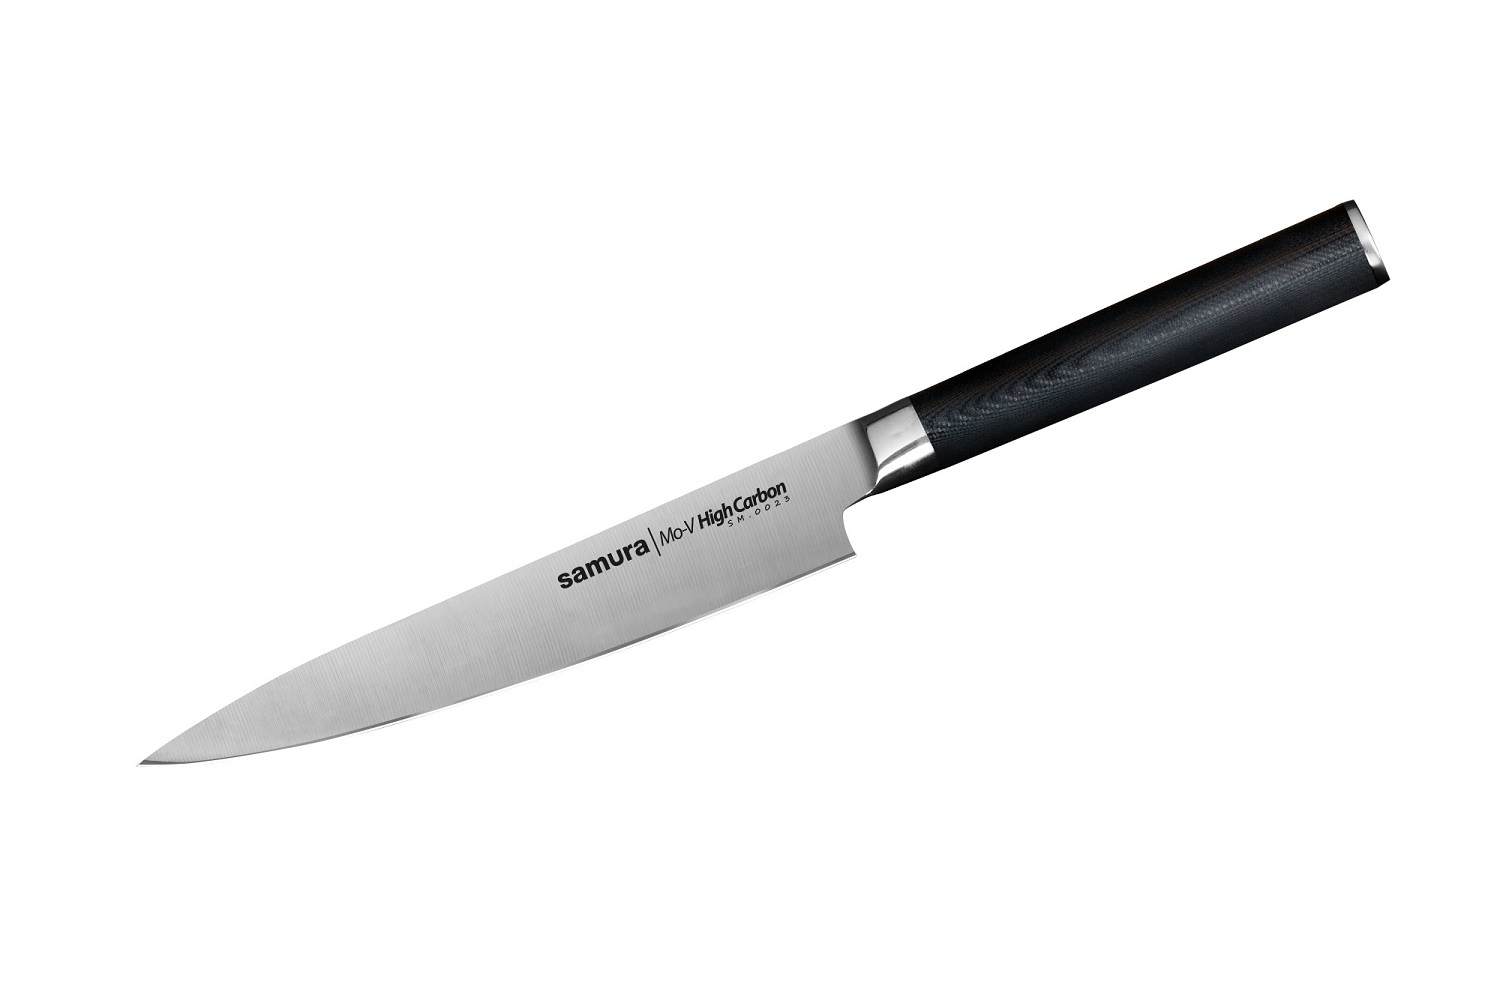 Нож Samura универсальный Mo-V, 15 см, G-10 нож накири mo v 16 7 см sm 0043 k samura